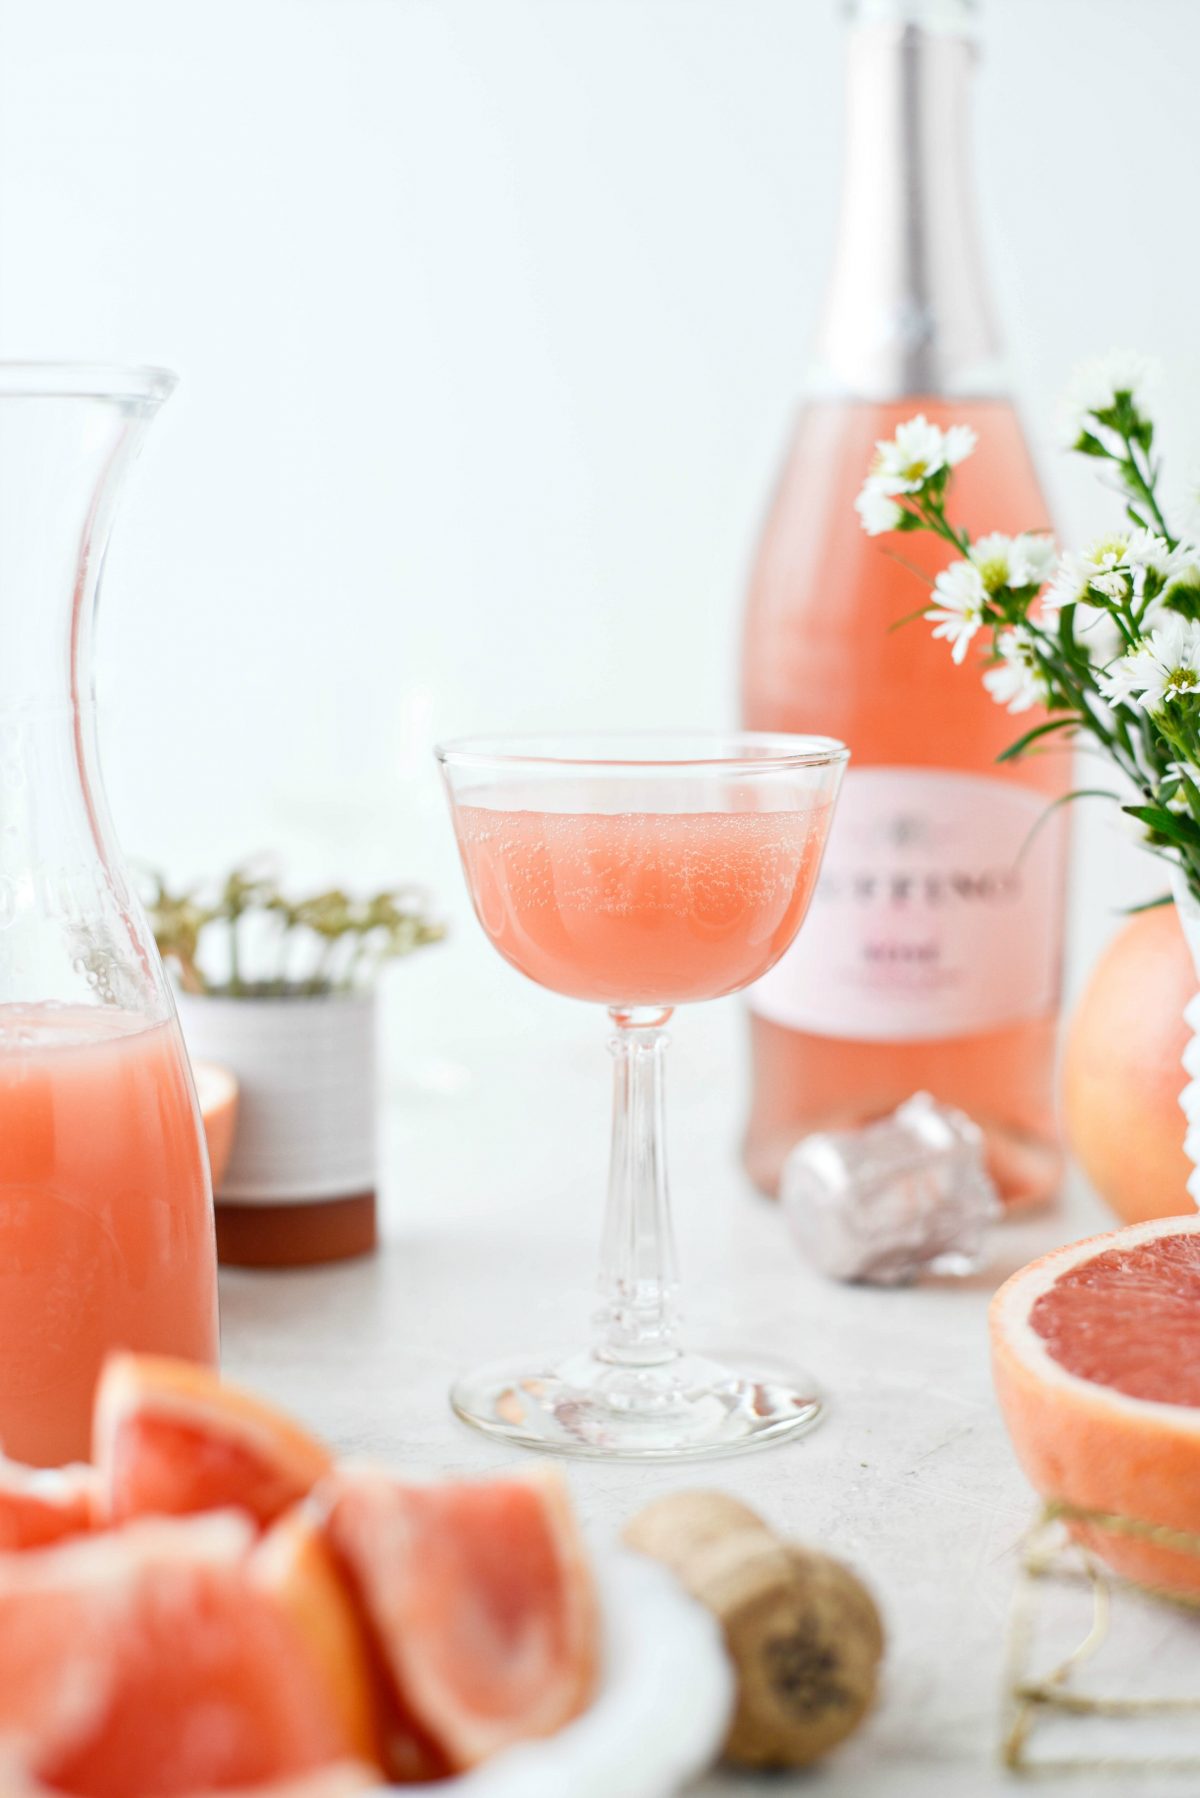 Grapefruit ros Kurt Mimosas l SimplyScratch.com #voksen # drik # grapefrugt # rose # mimosa # påske #brunch #mothersday